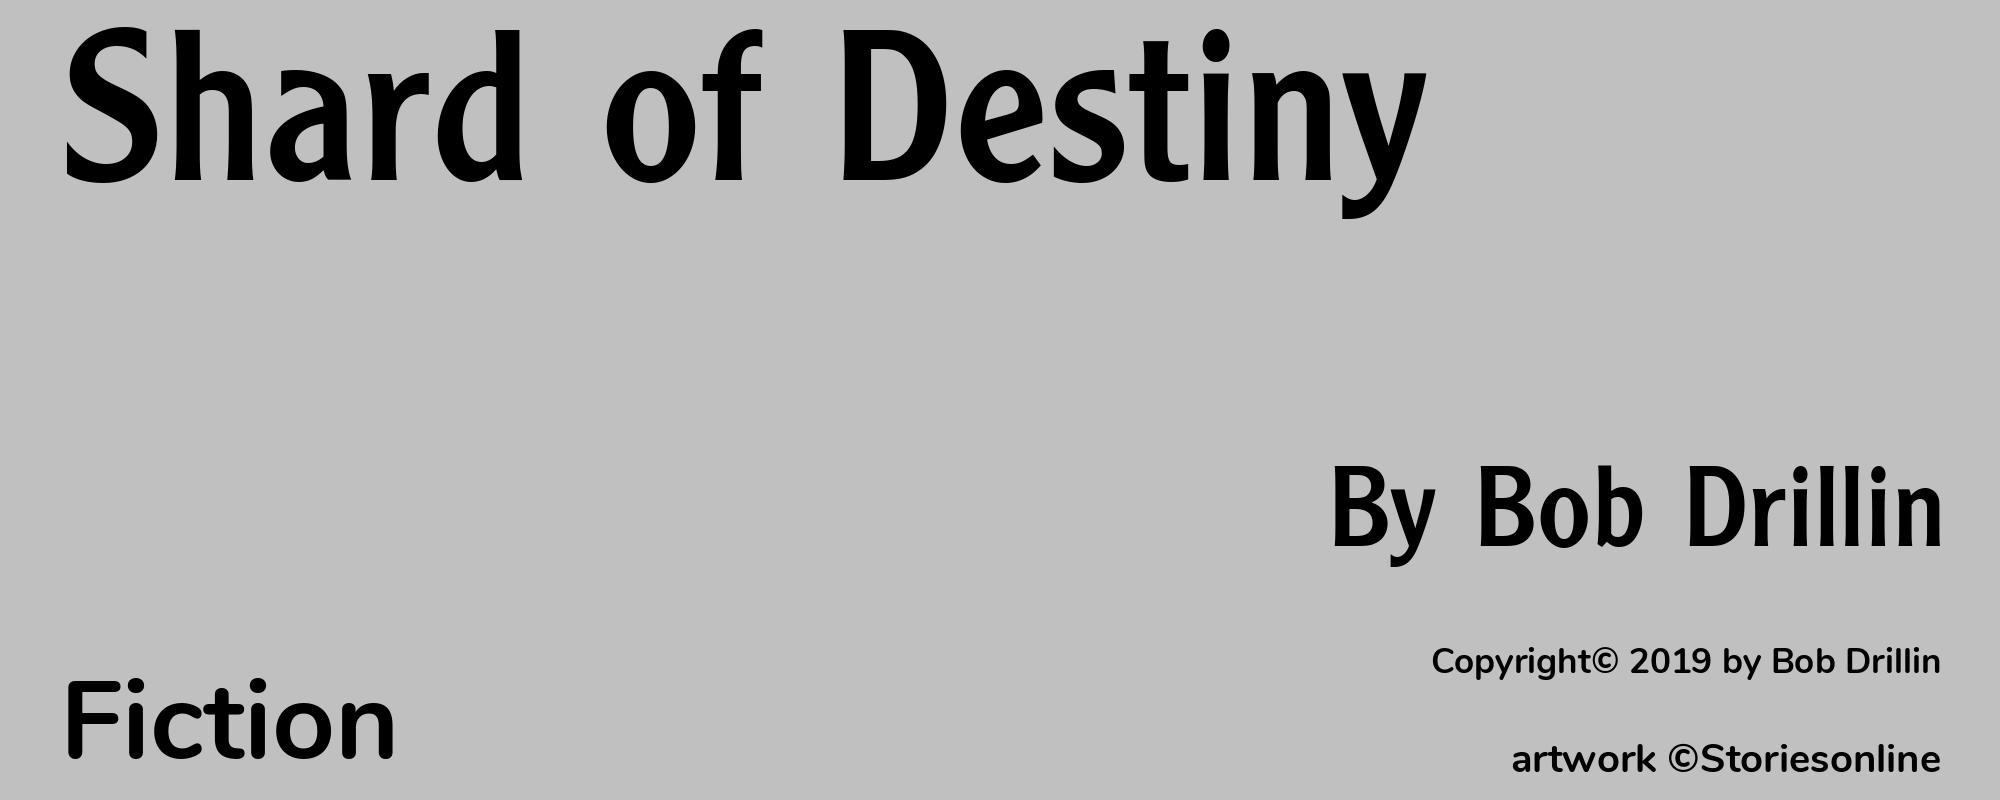 Shard of Destiny - Cover